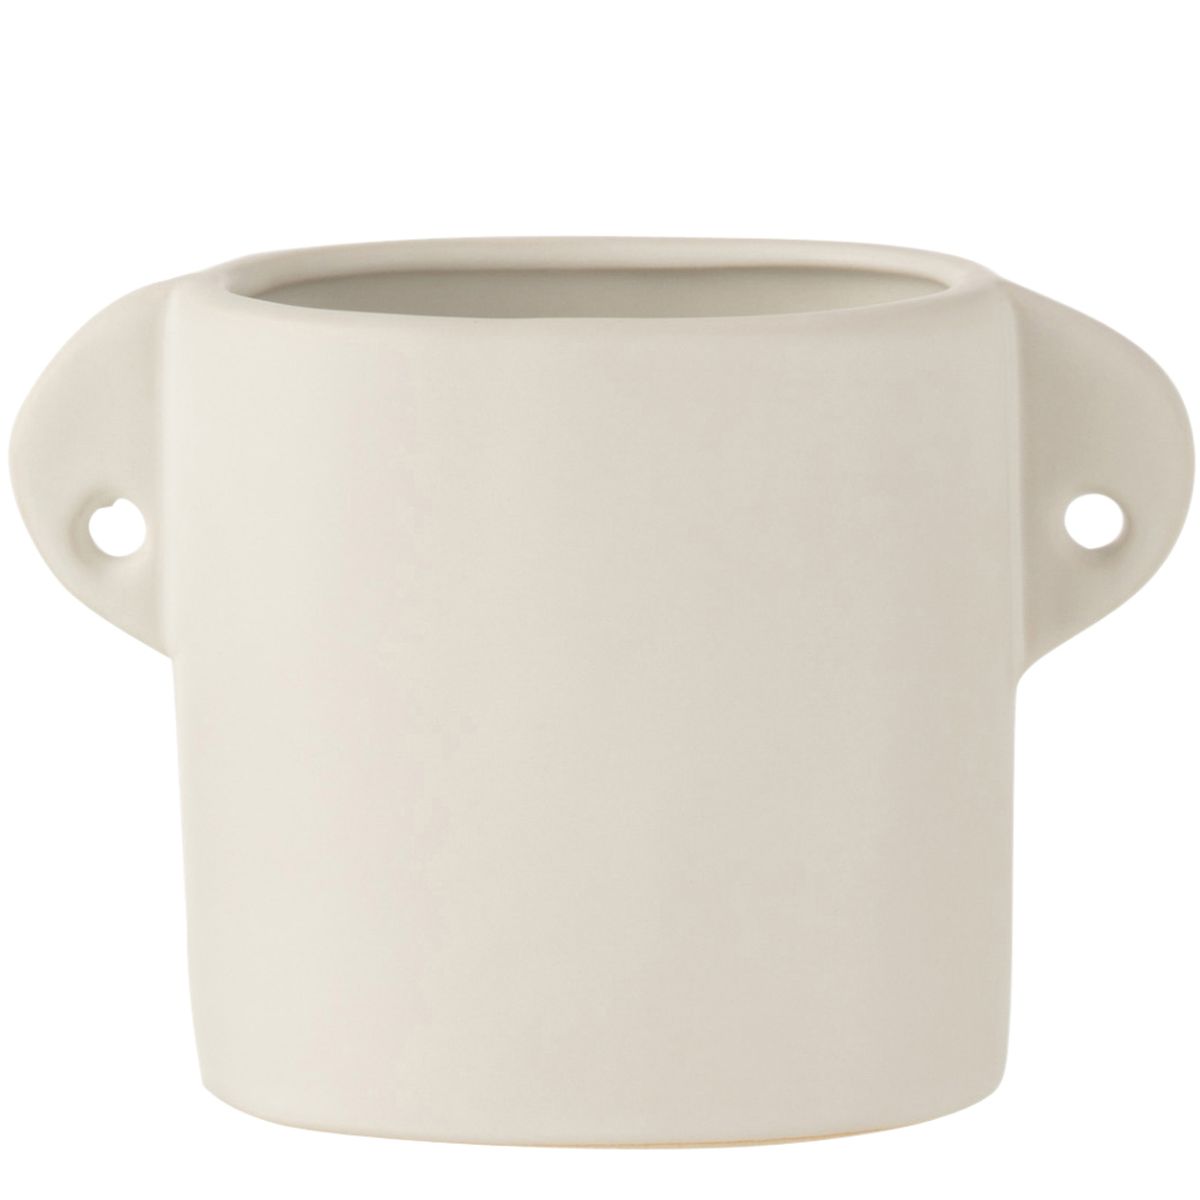 Cache-pot Renaissance en cramique blanche 11.5 cm